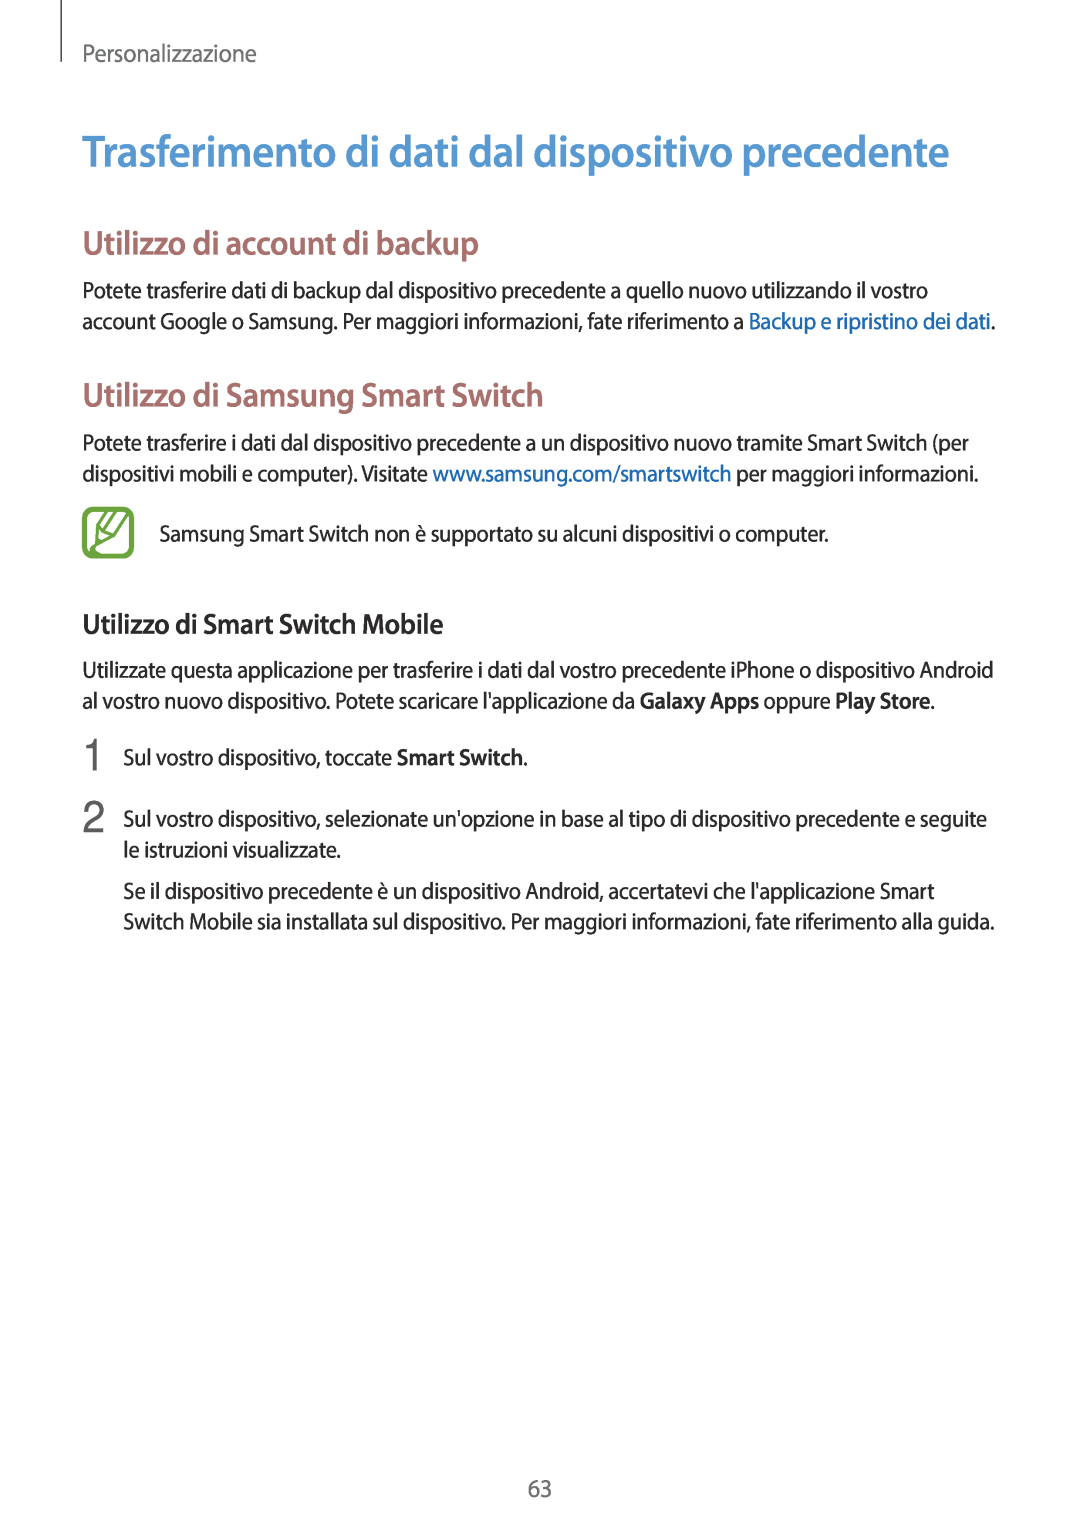 Samsung SM-G800FZKAVD2 Trasferimento di dati dal dispositivo precedente, Utilizzo di account di backup, Personalizzazione 